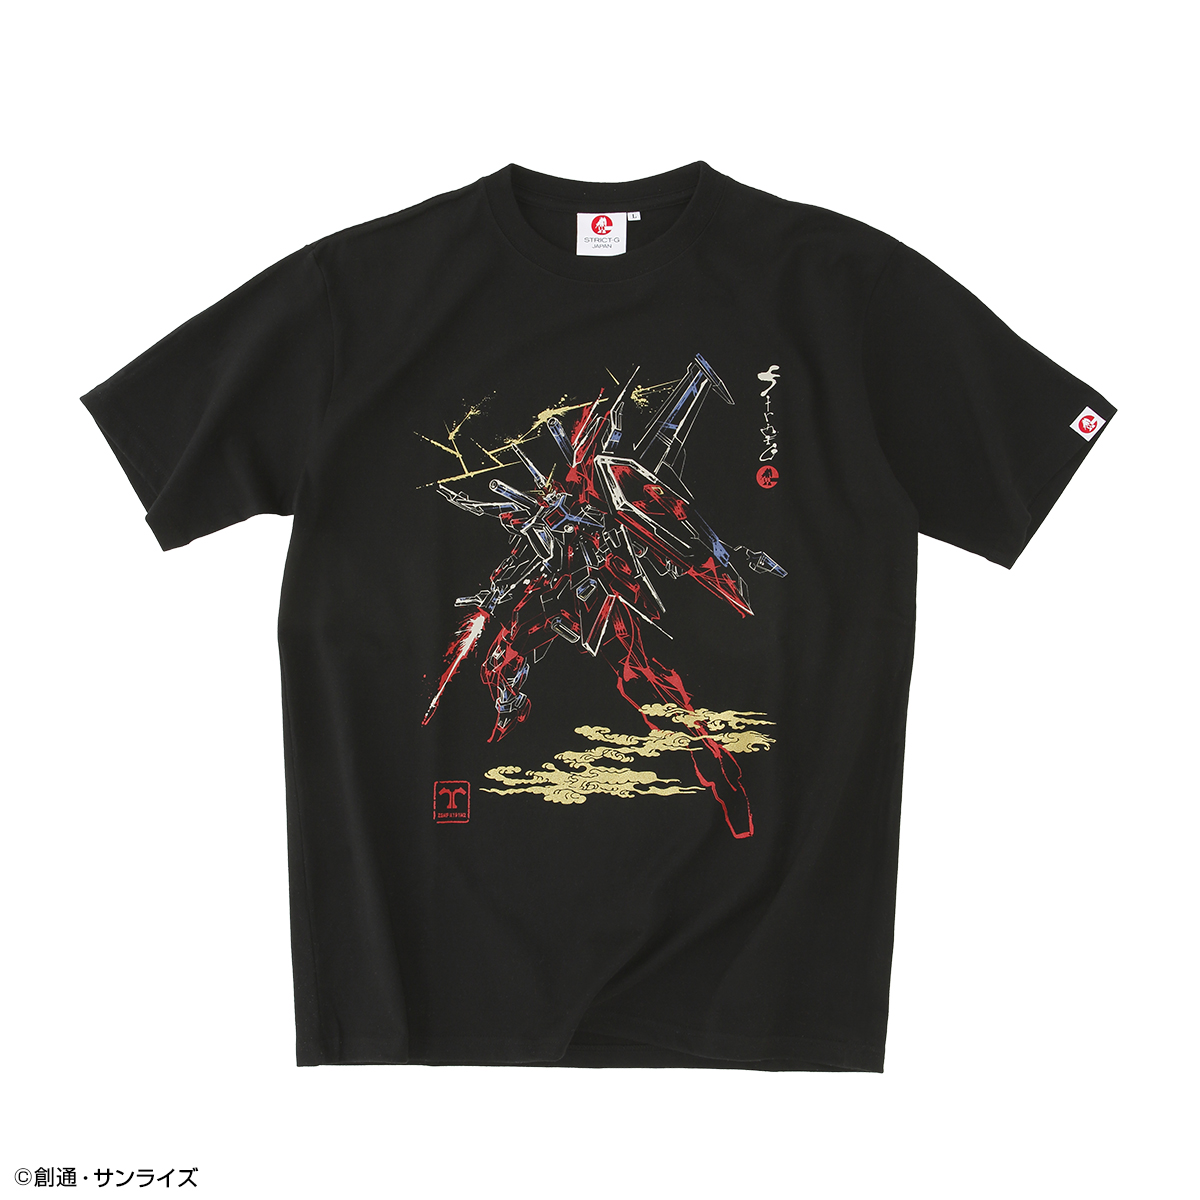 STRICT-G JAPAN『機動戦士SEED FREEDOM』Tシャツ インフィニットジャスティスガンダム弐式